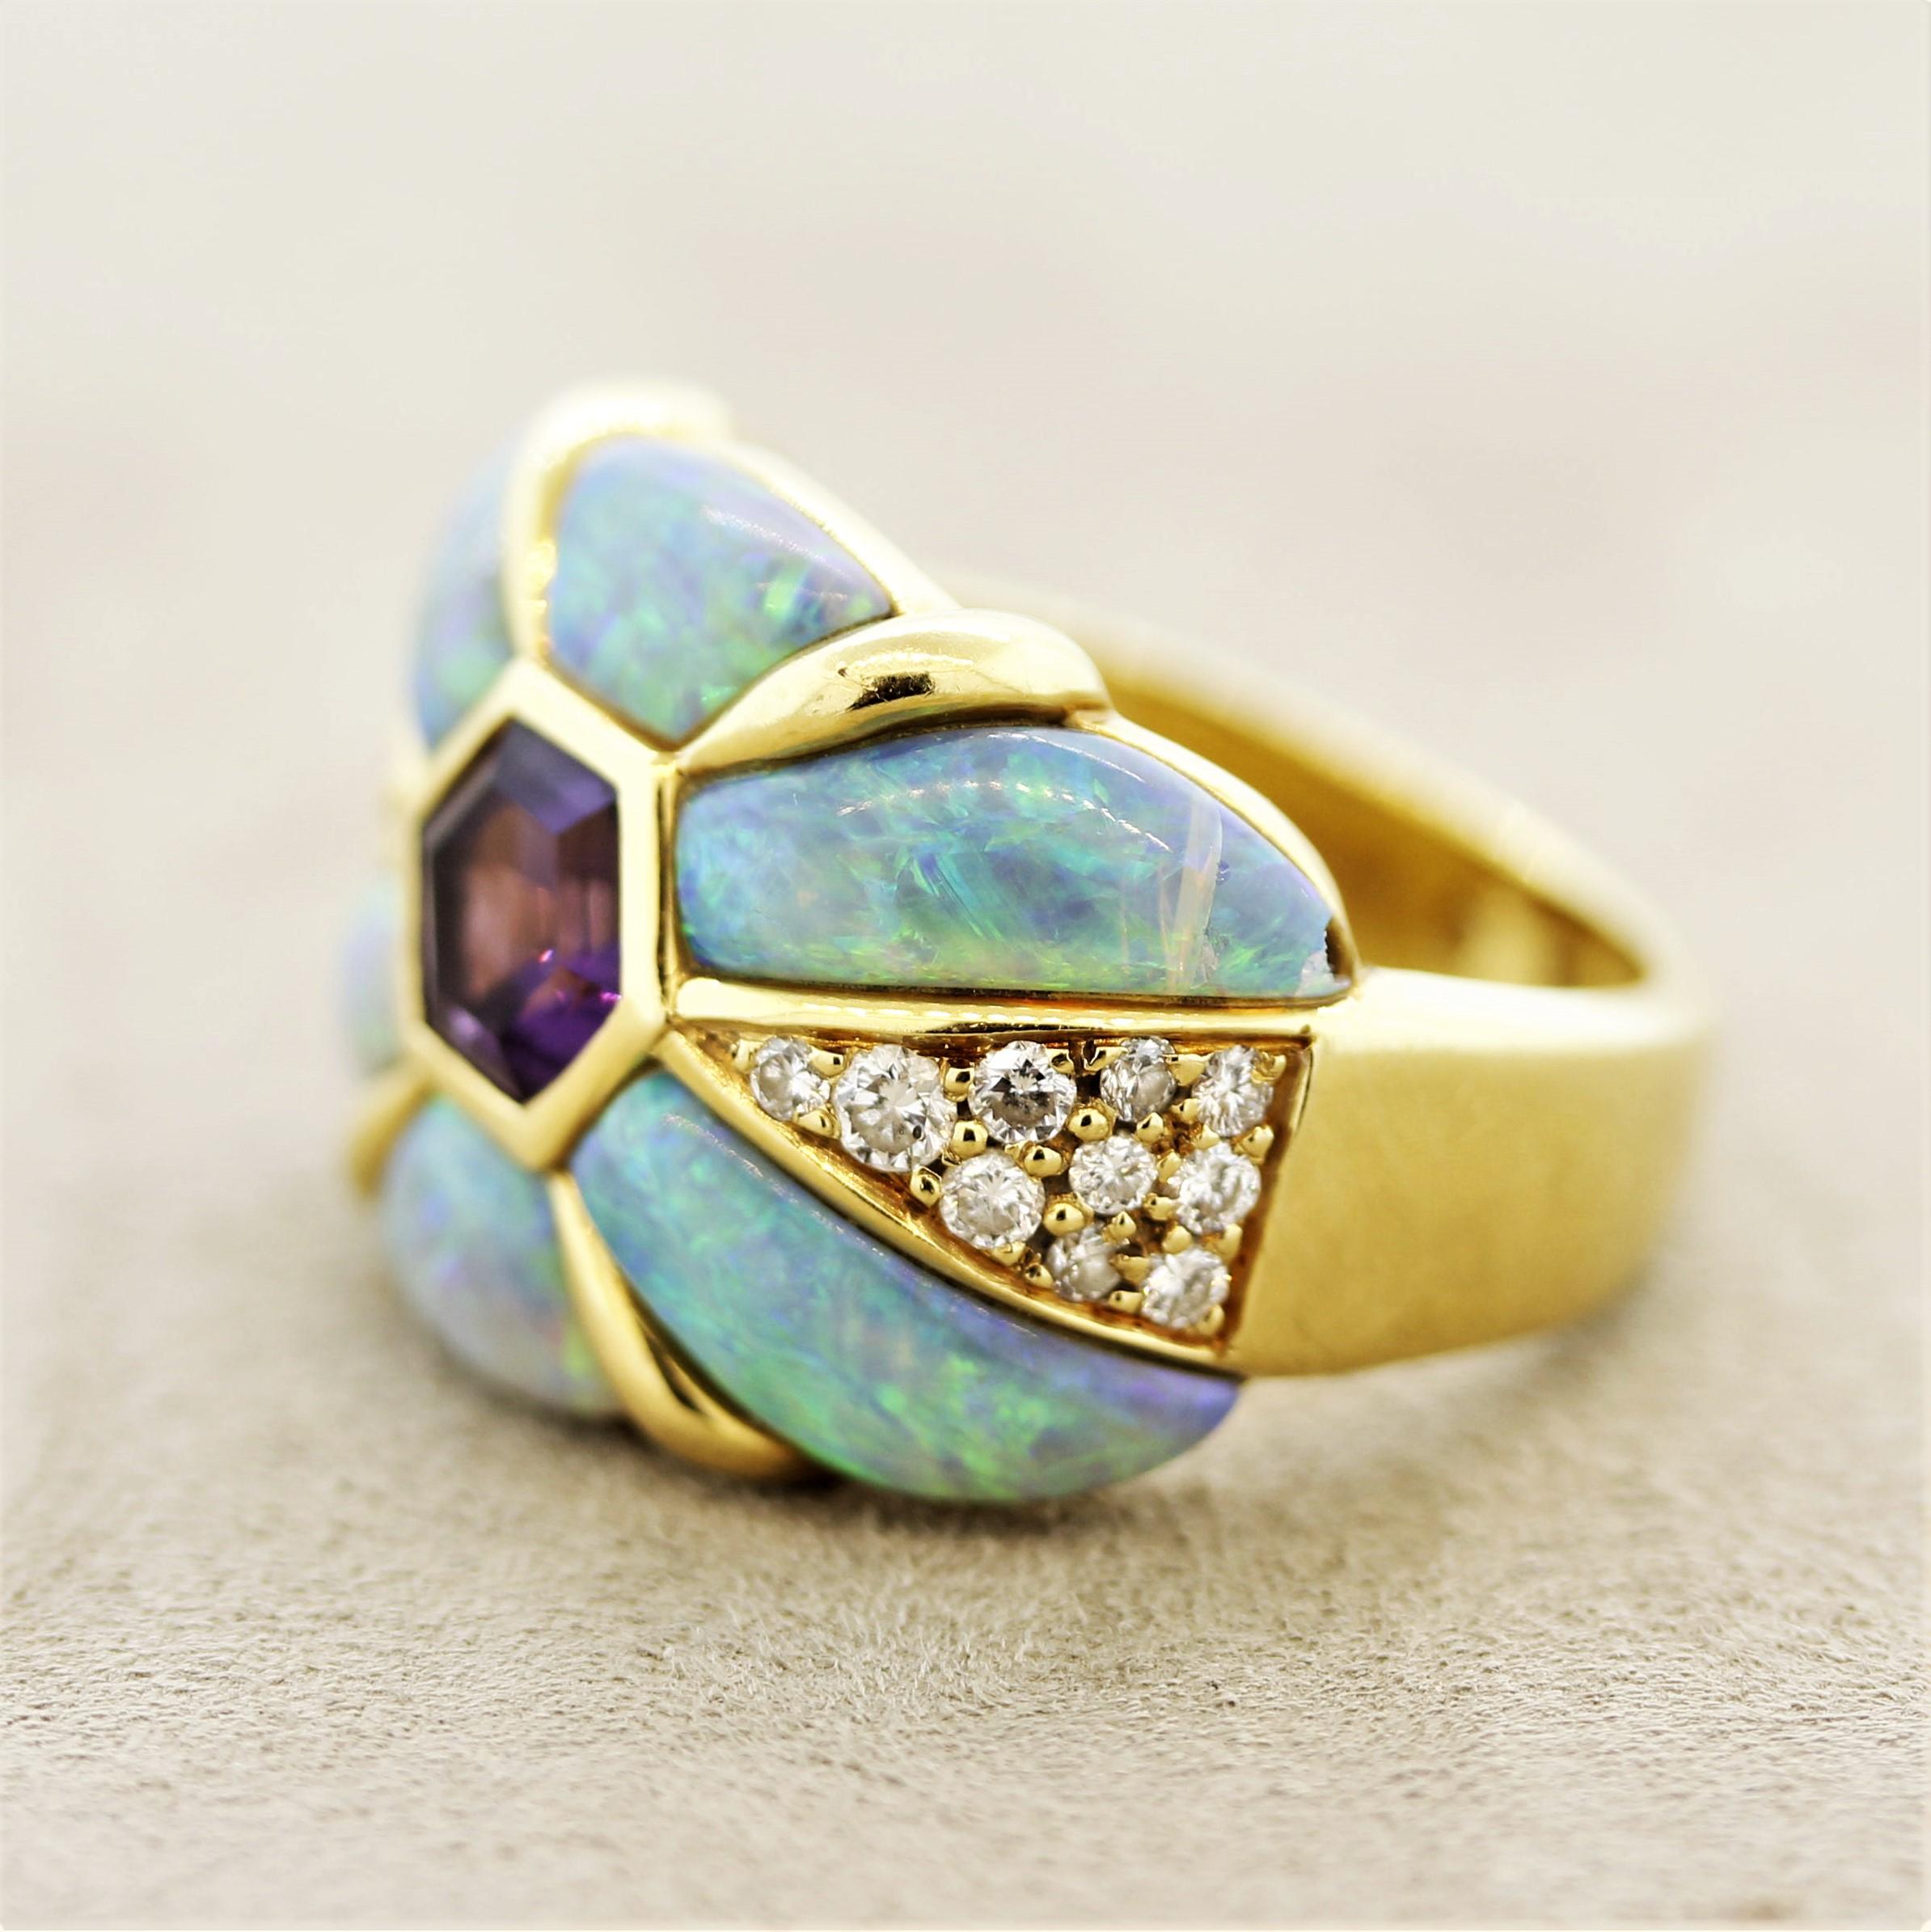 Mixed Cut Kabana Amethyst Diamond Opal Gold Band Ring